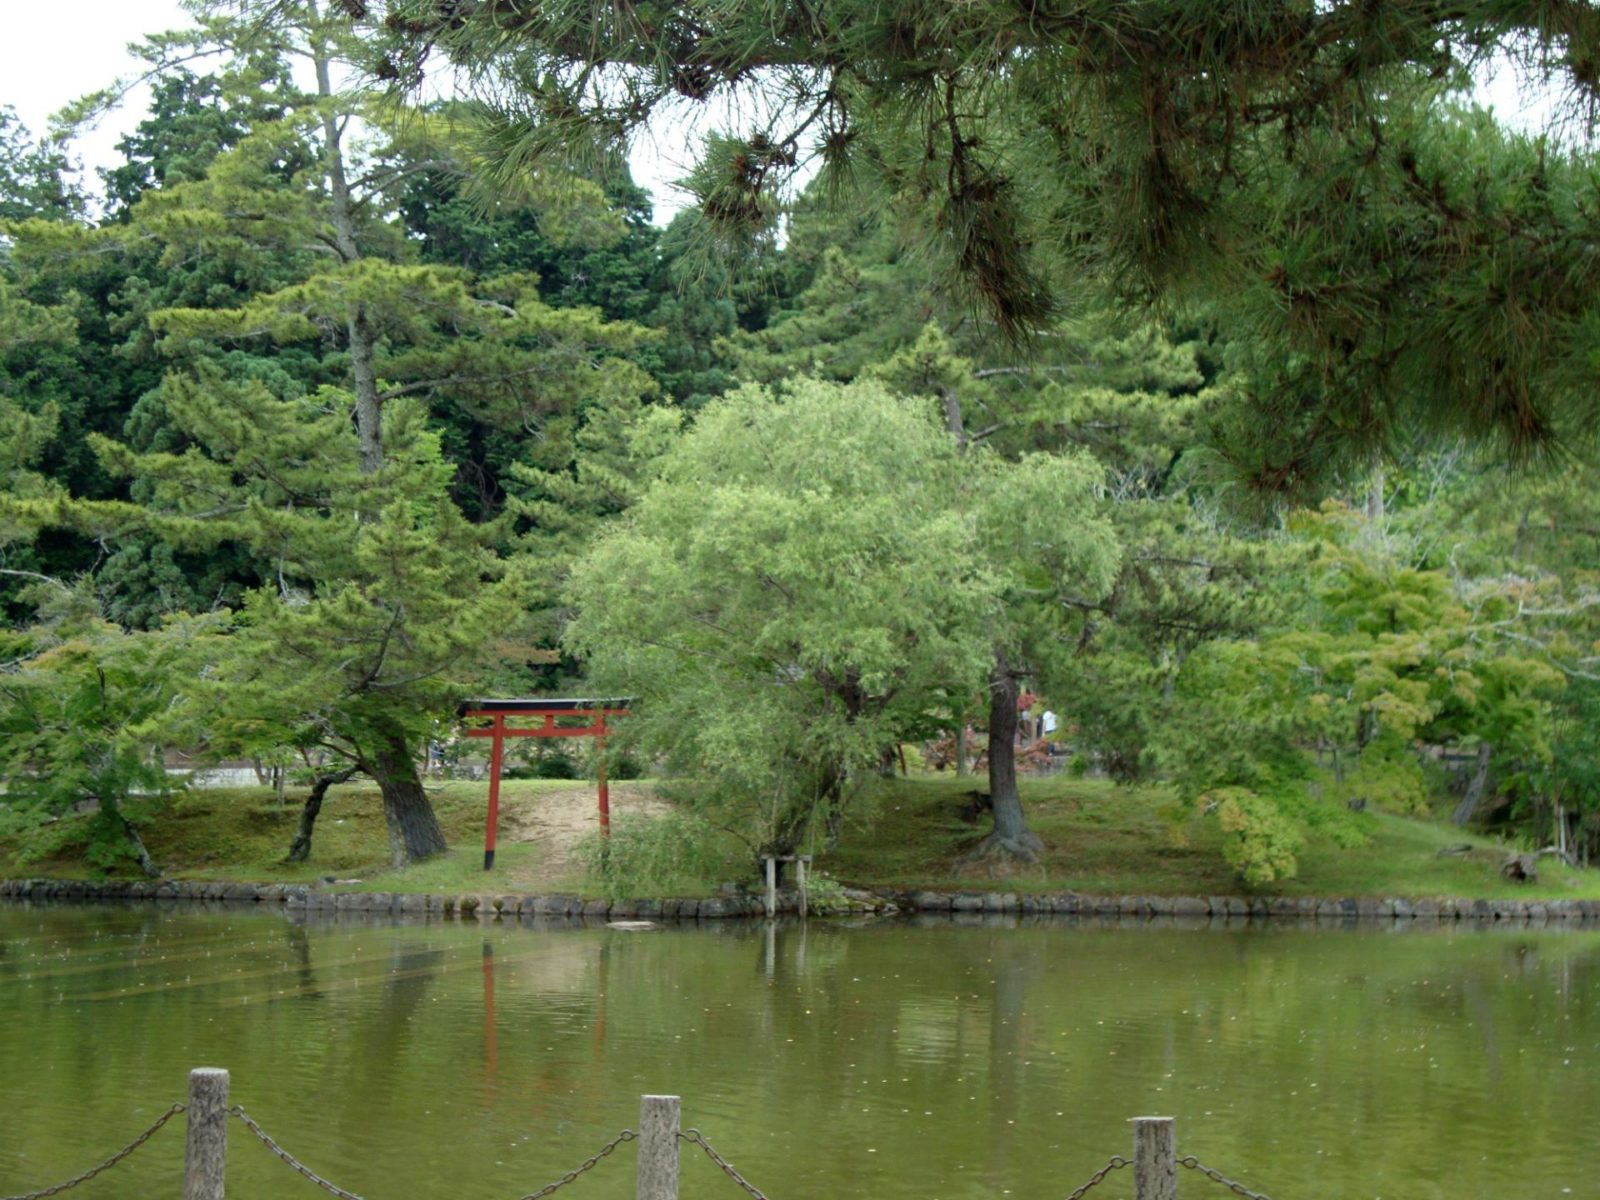 Lake at Todaiji at Nara Park in Japan: the gardens at Todaiji Temple make for a pleasant walk.